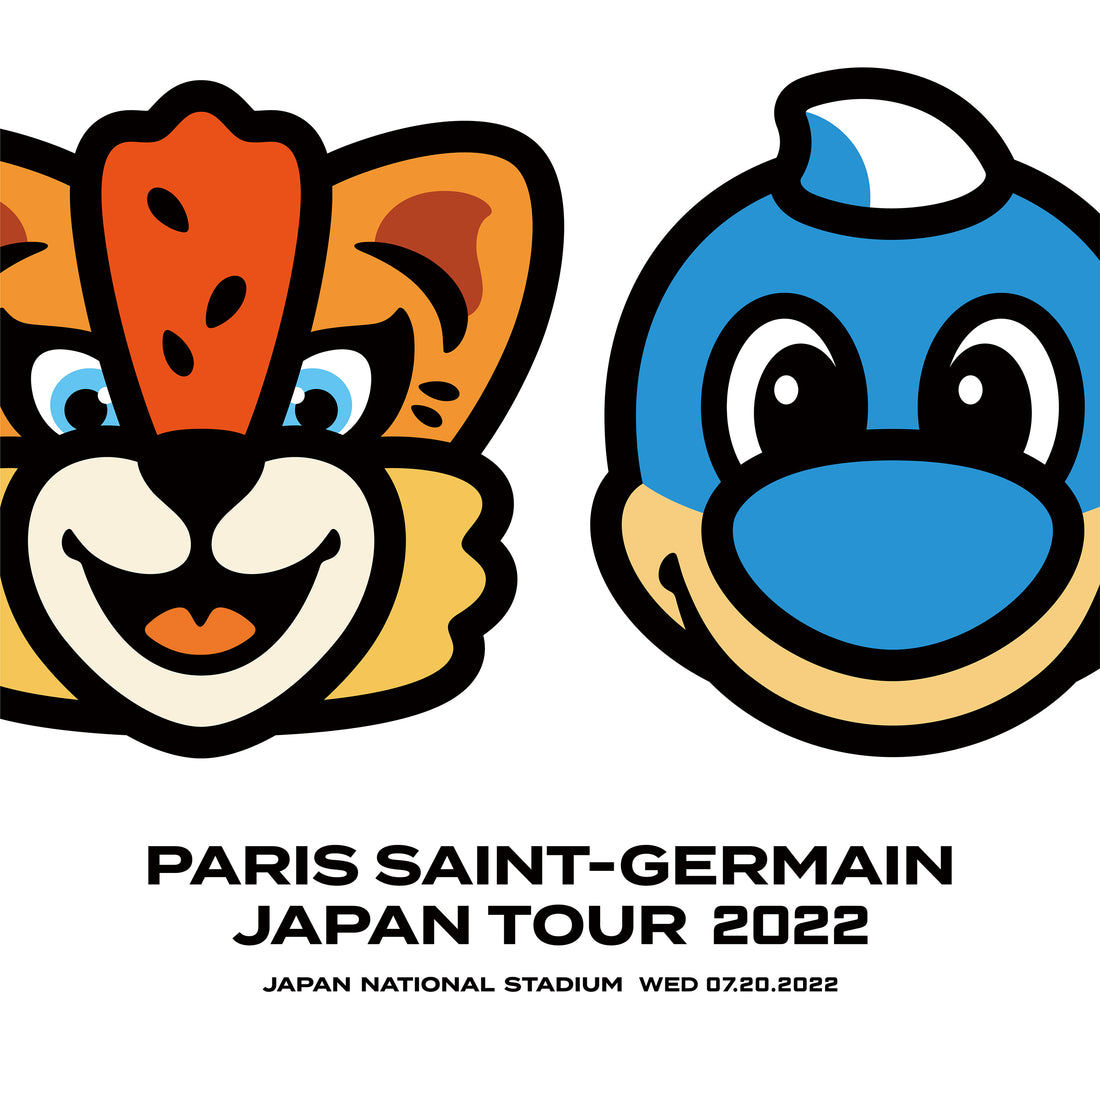 パリ・サン=ジェルマン ジャパンツアー 2022 のスペシャルポスターを NIGO がデザイン